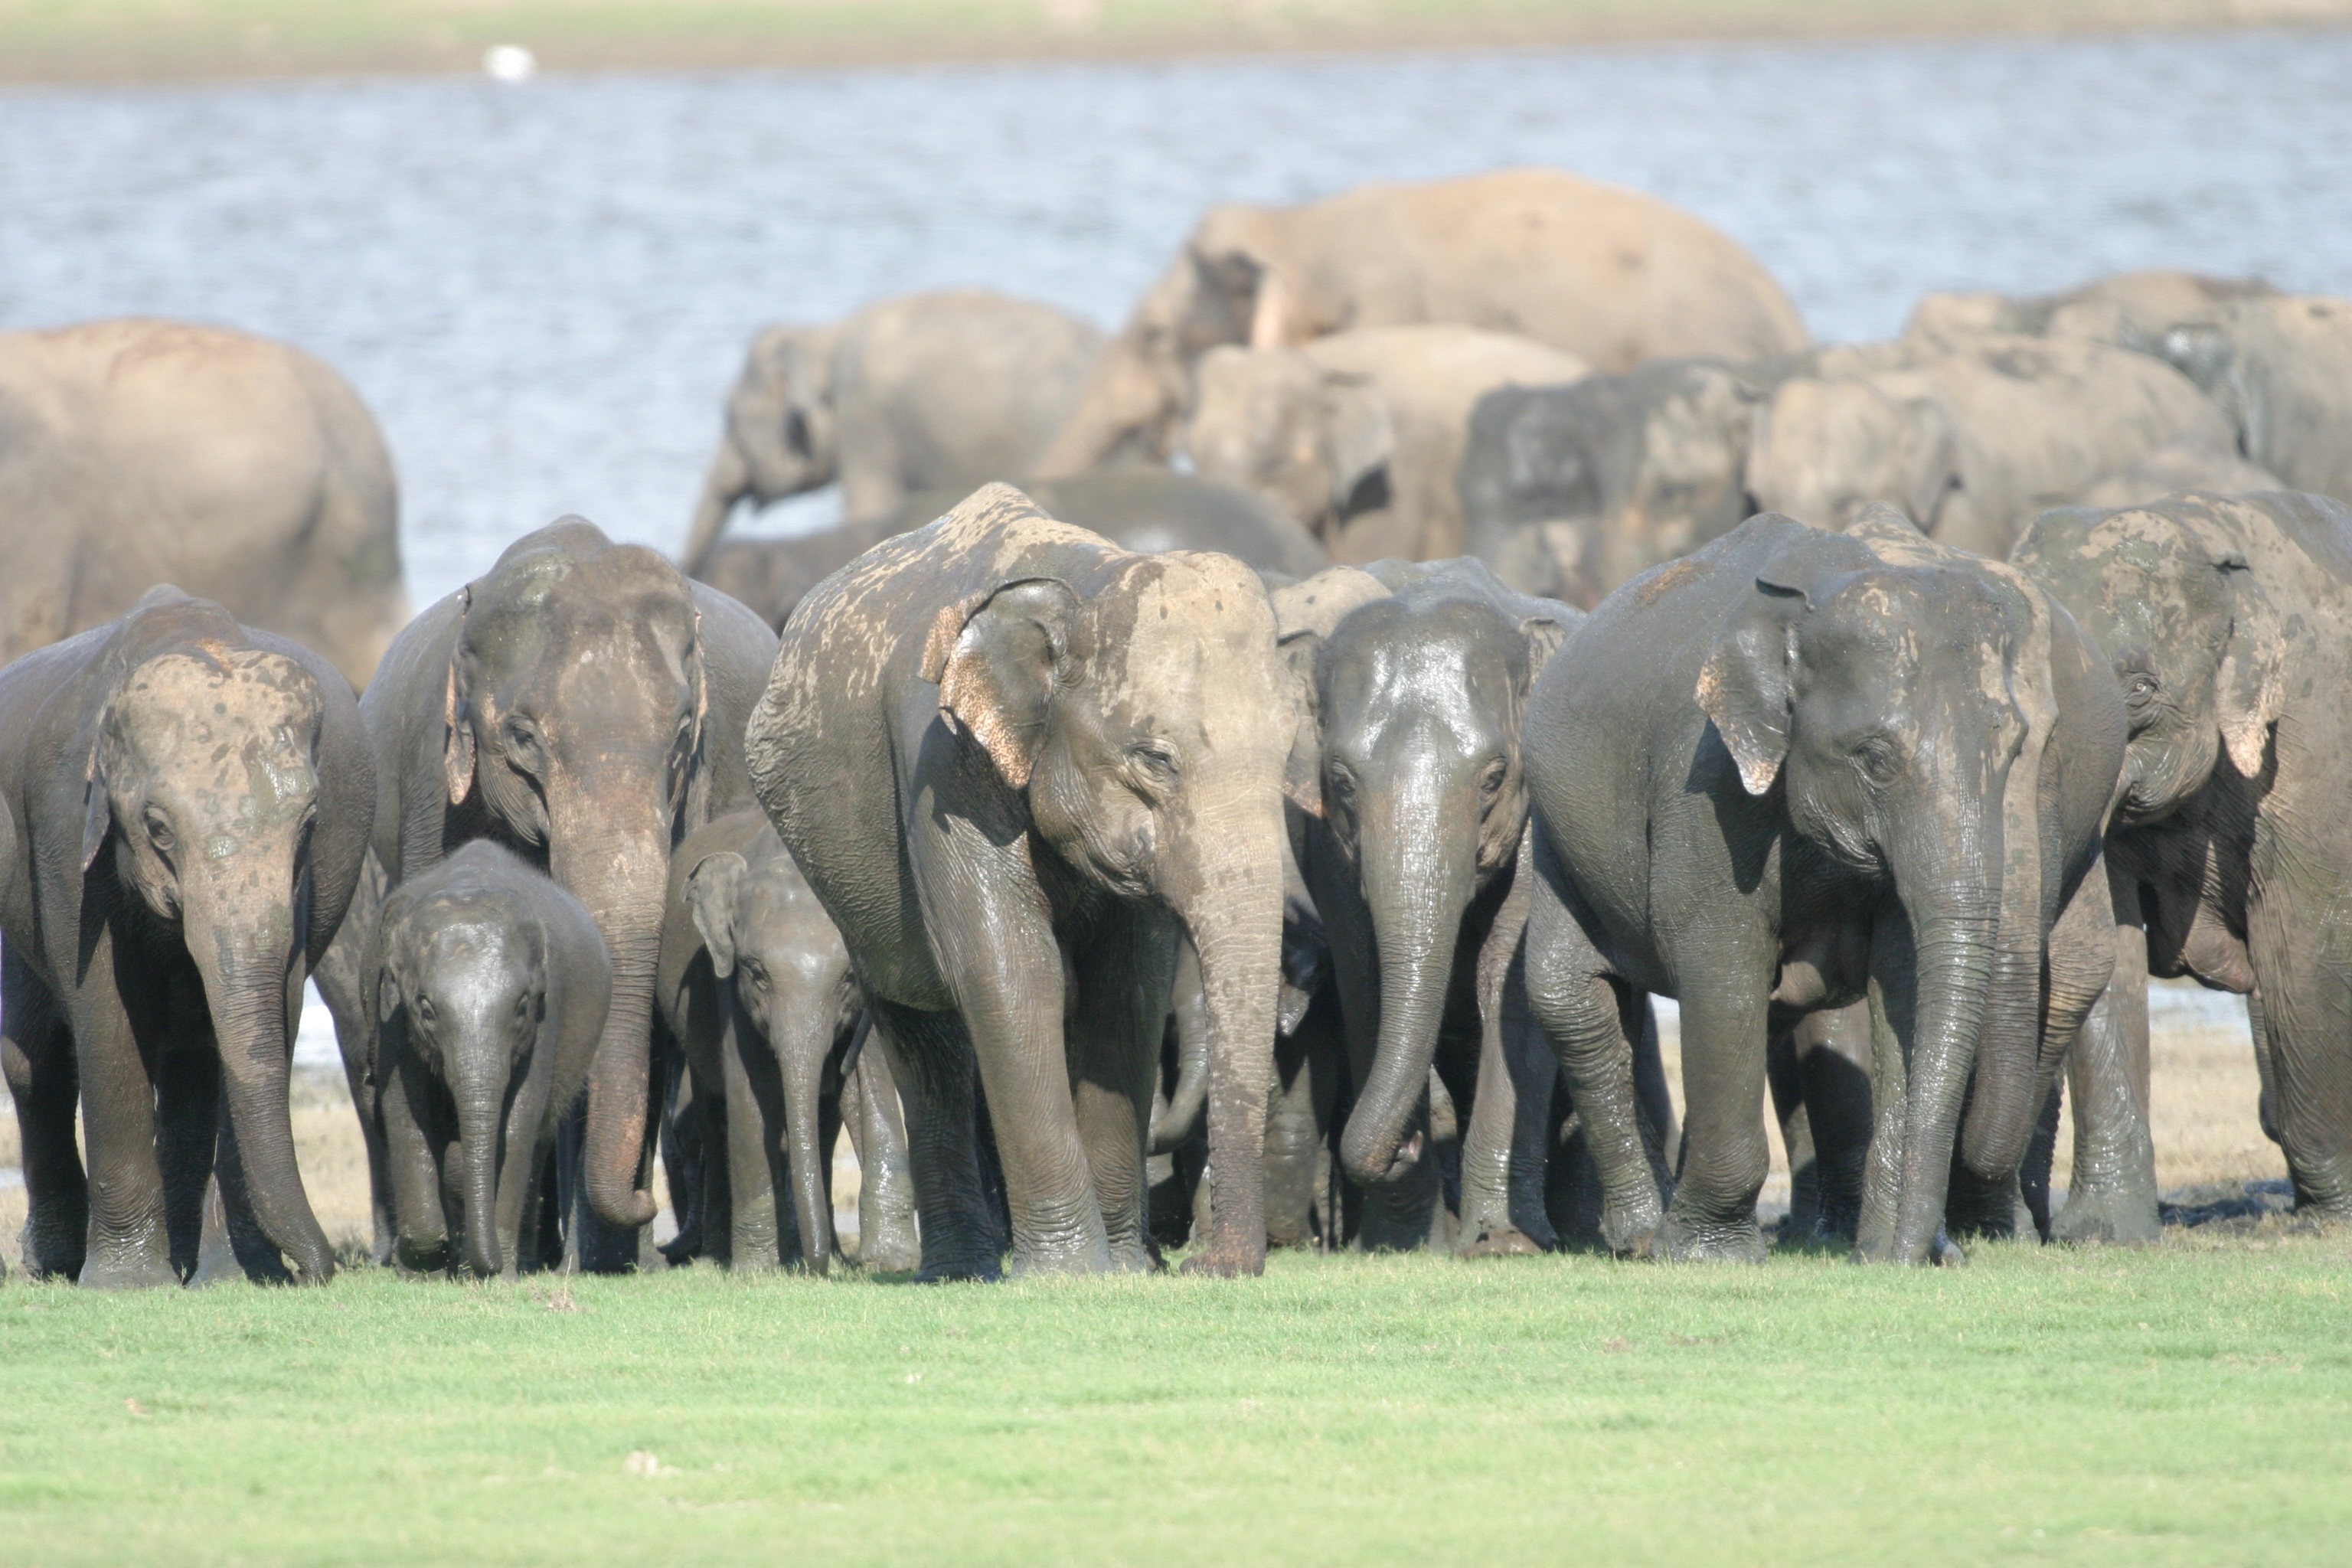 Elephants are big cats. Стадо слонов. Стая слонов. Популяция слонов. Много слонов.